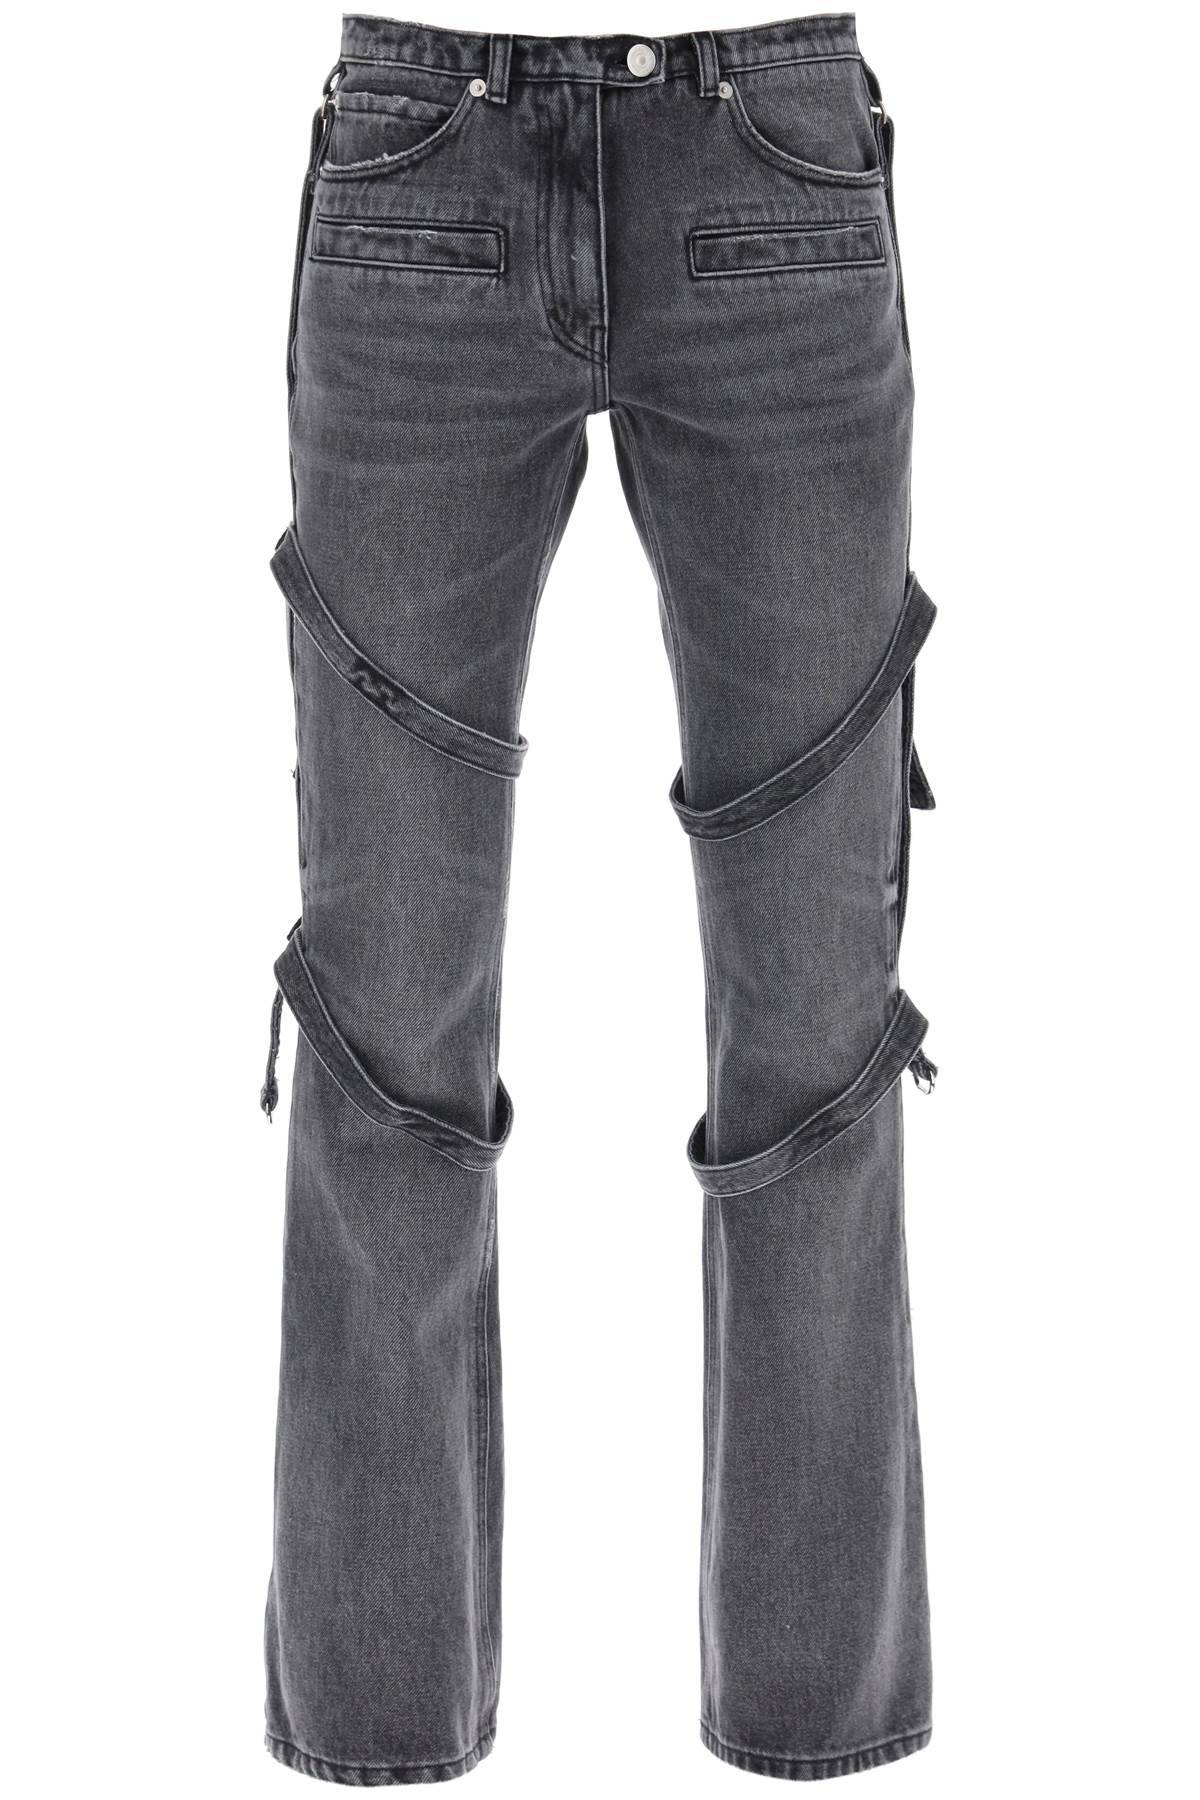 Courrèges COURREGES bootcut jeans with straps